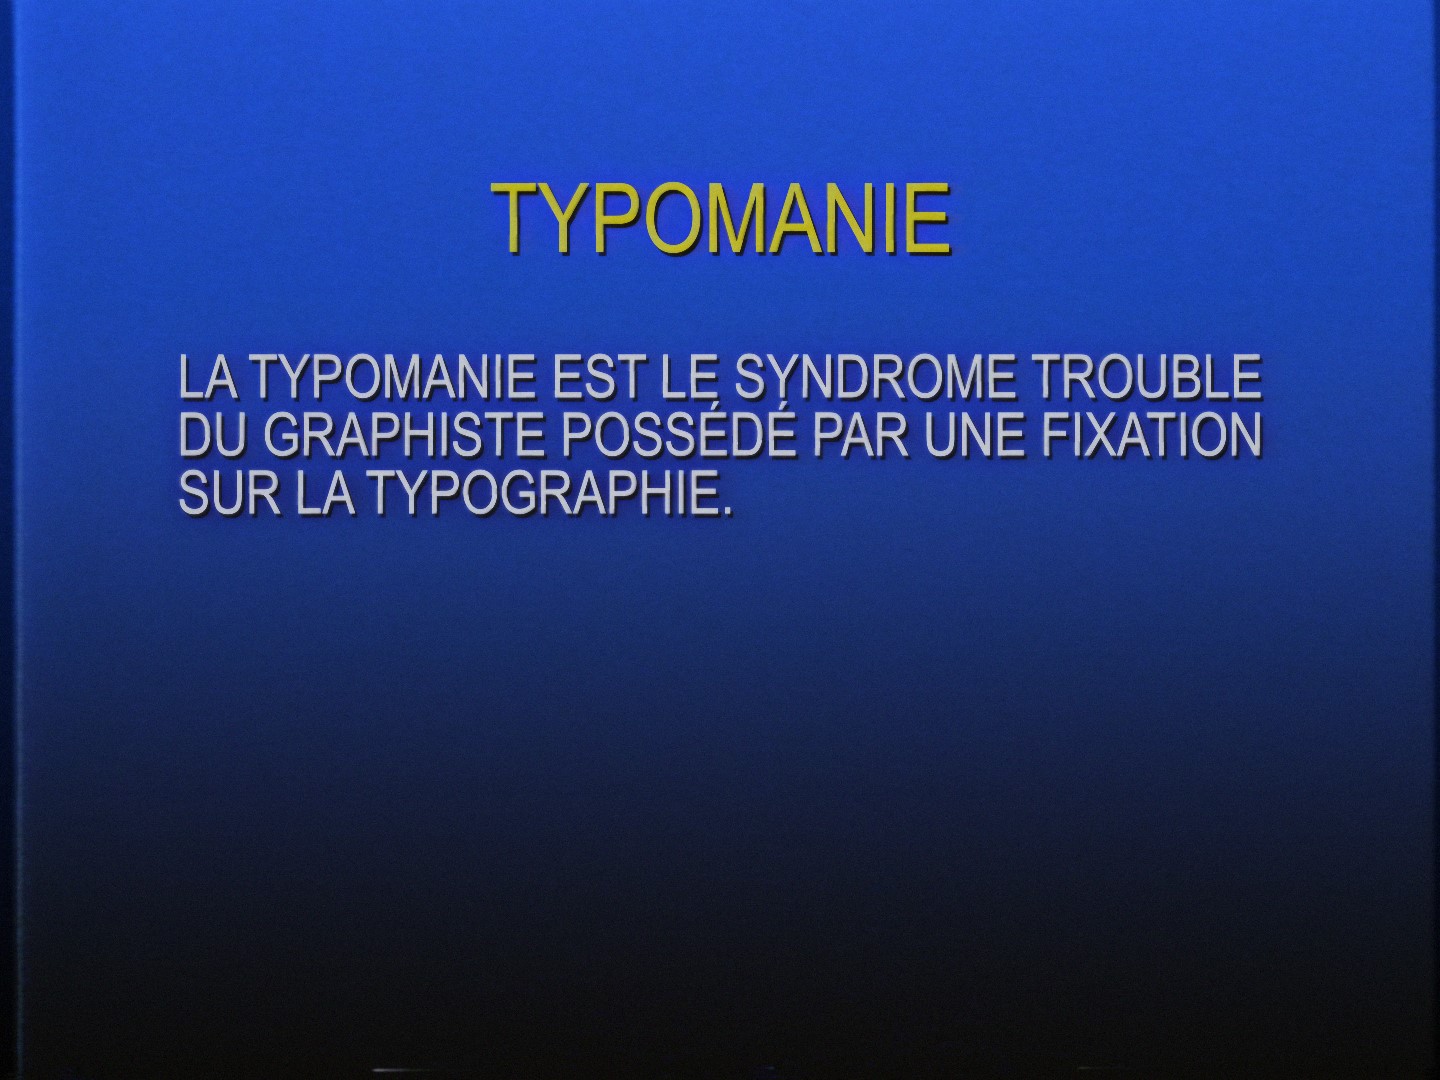 Stills from the Typomanie video